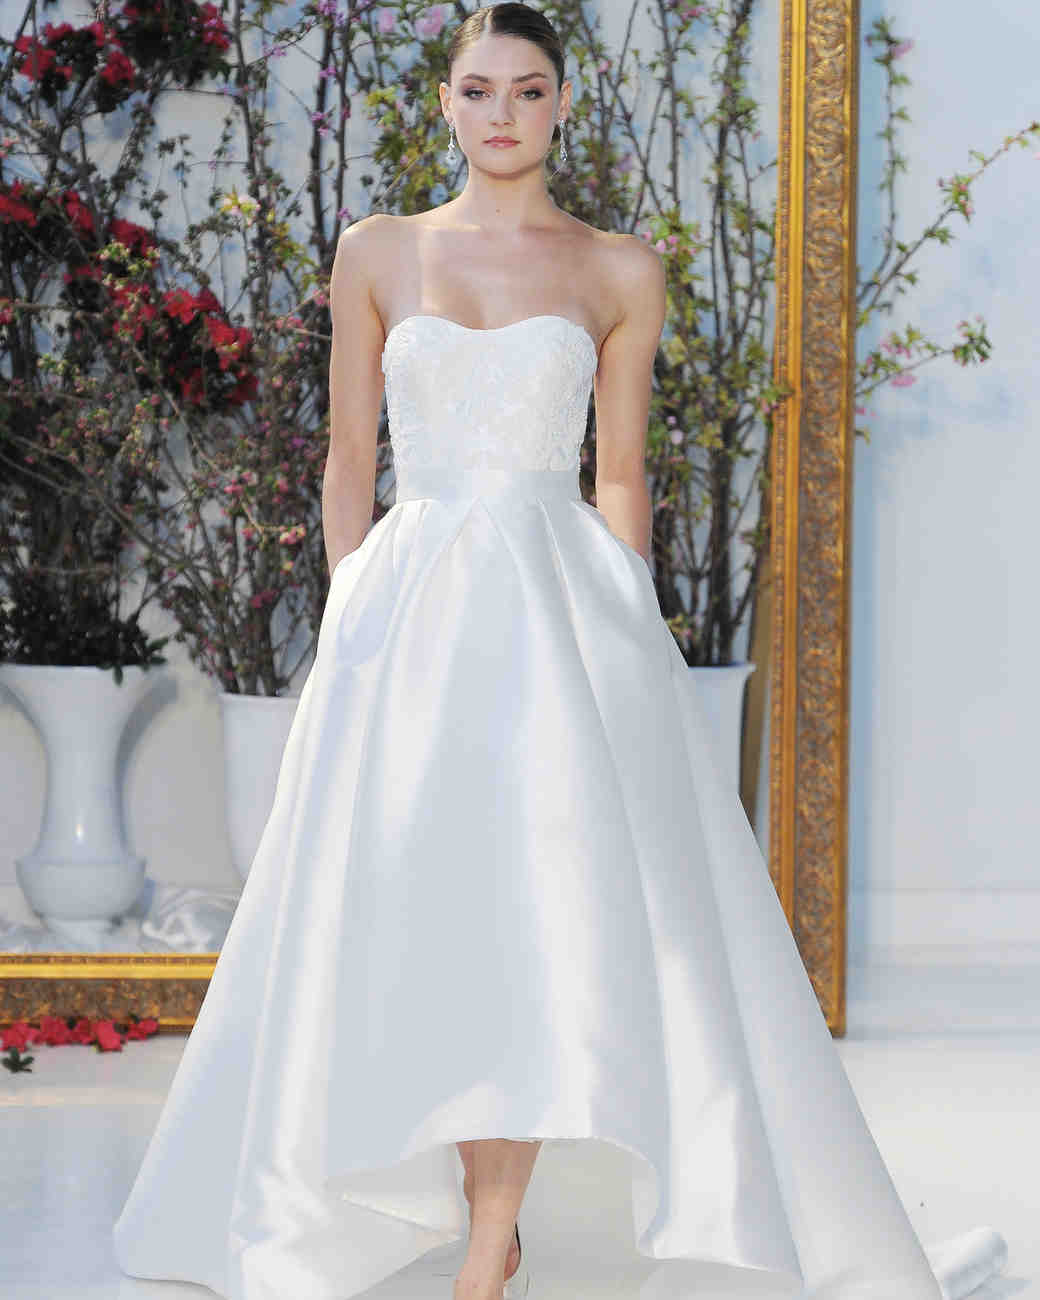 46 Pretty Wedding Dresses With Pockets Martha Stewart Weddings 8050